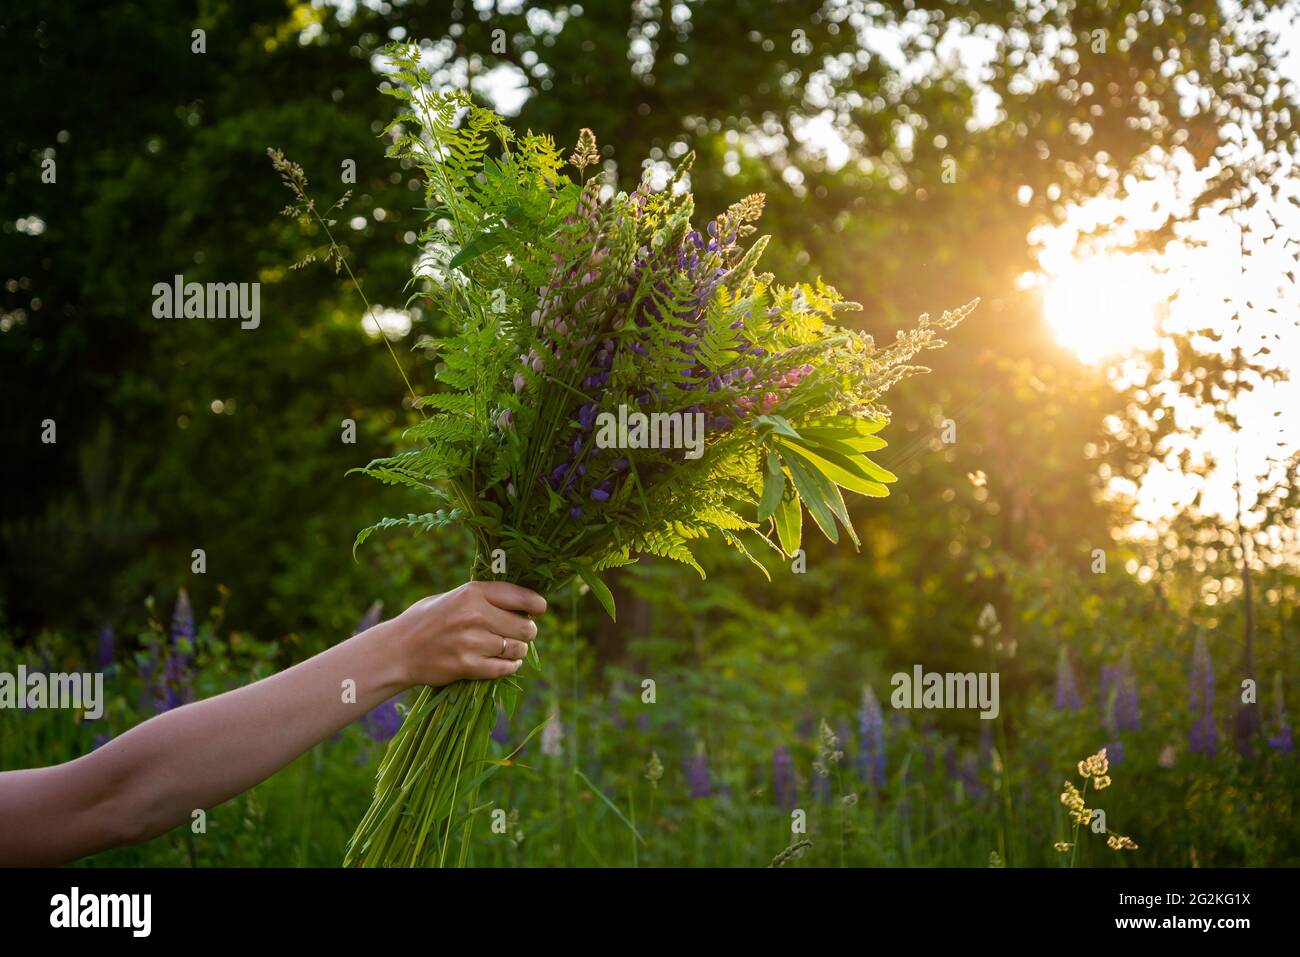 Frau Hand hält einen Strauß von Hochsommer Themen Blumen. Farn, Lupine und andere Wiesenblumen mit goldener Hintergrundbeleuchtung von der Sonne, die Bokeh erzeugt Stockfoto